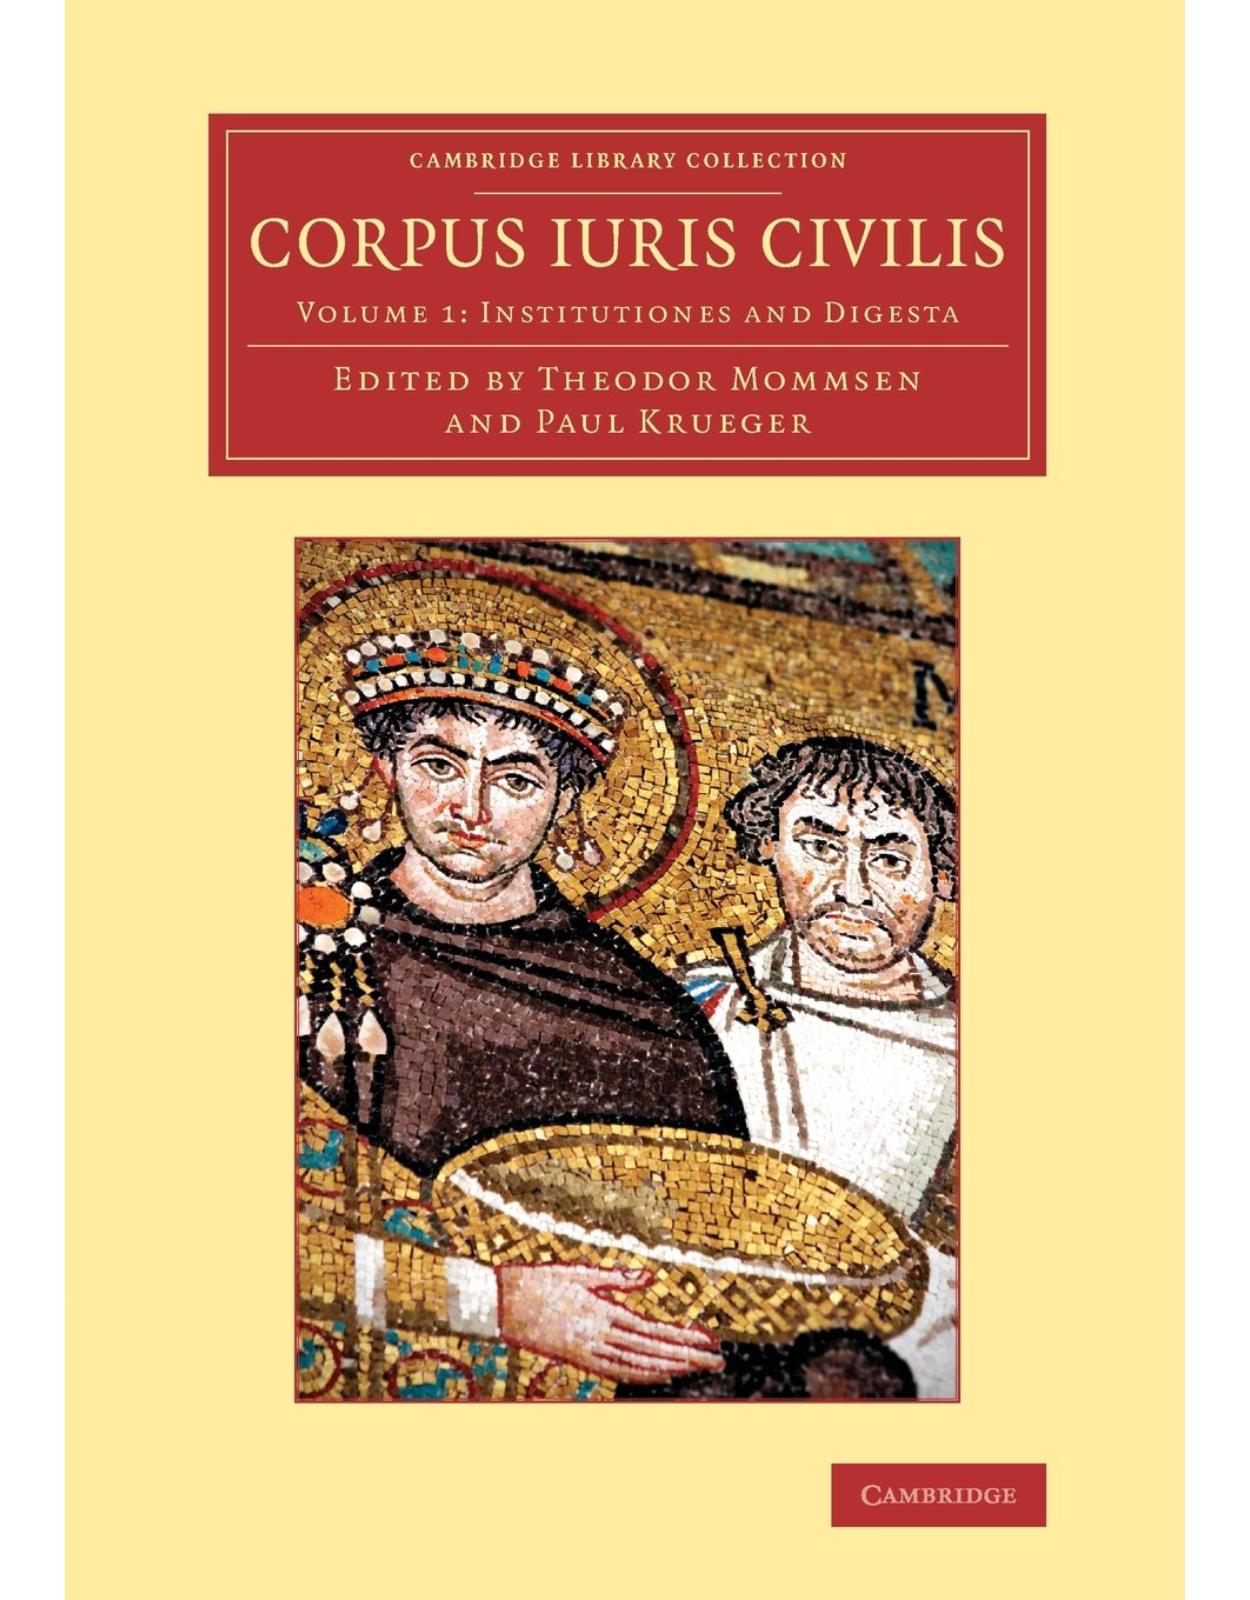 Corpus iuris civilis 3 Volume Set (Cambridge Library Collection - Classics)